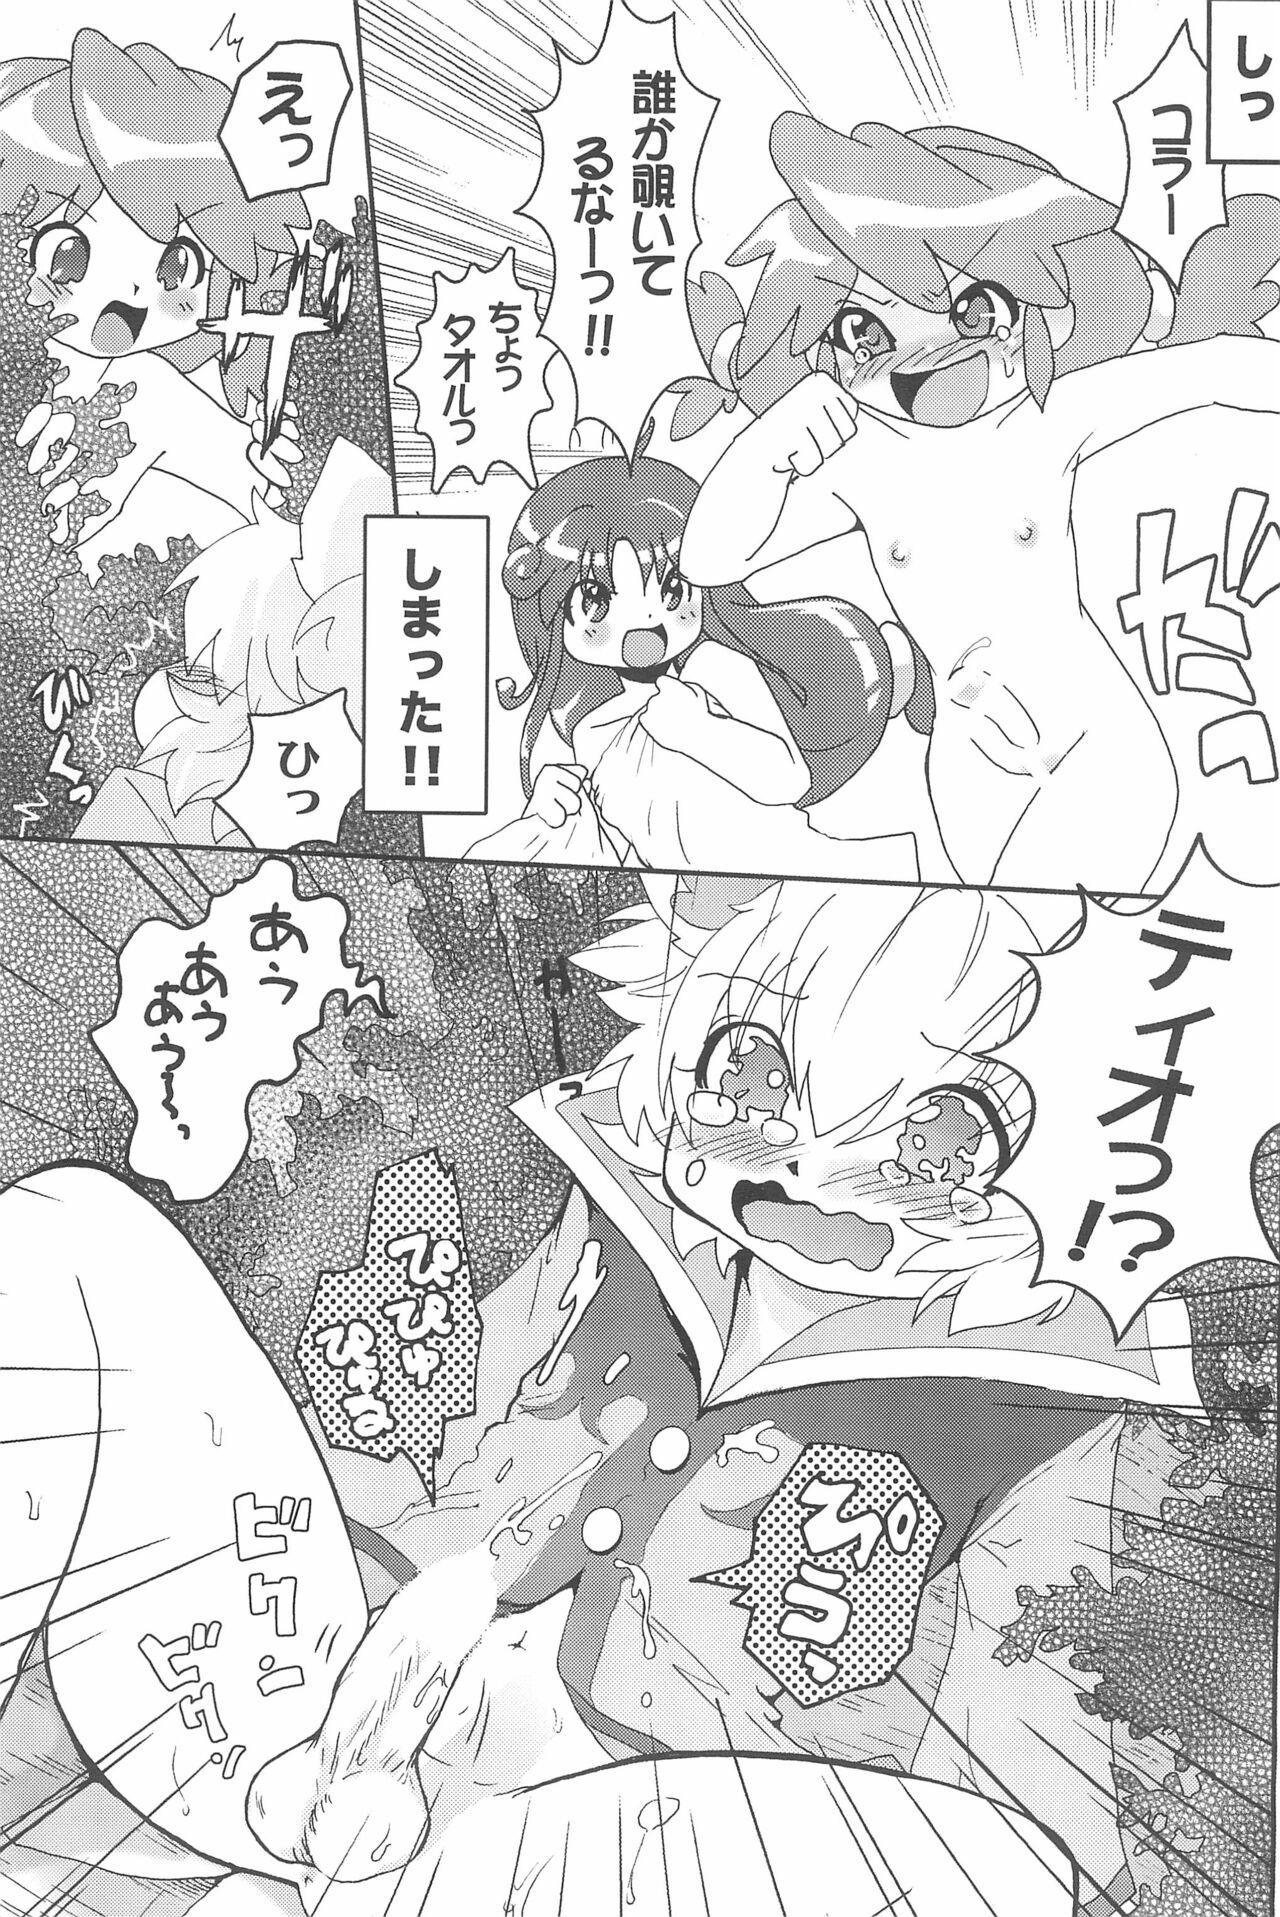 Wet Futanari Twinkle - Fushigiboshi no futagohime | twin princesses of the wonder planet Camgirl - Page 11